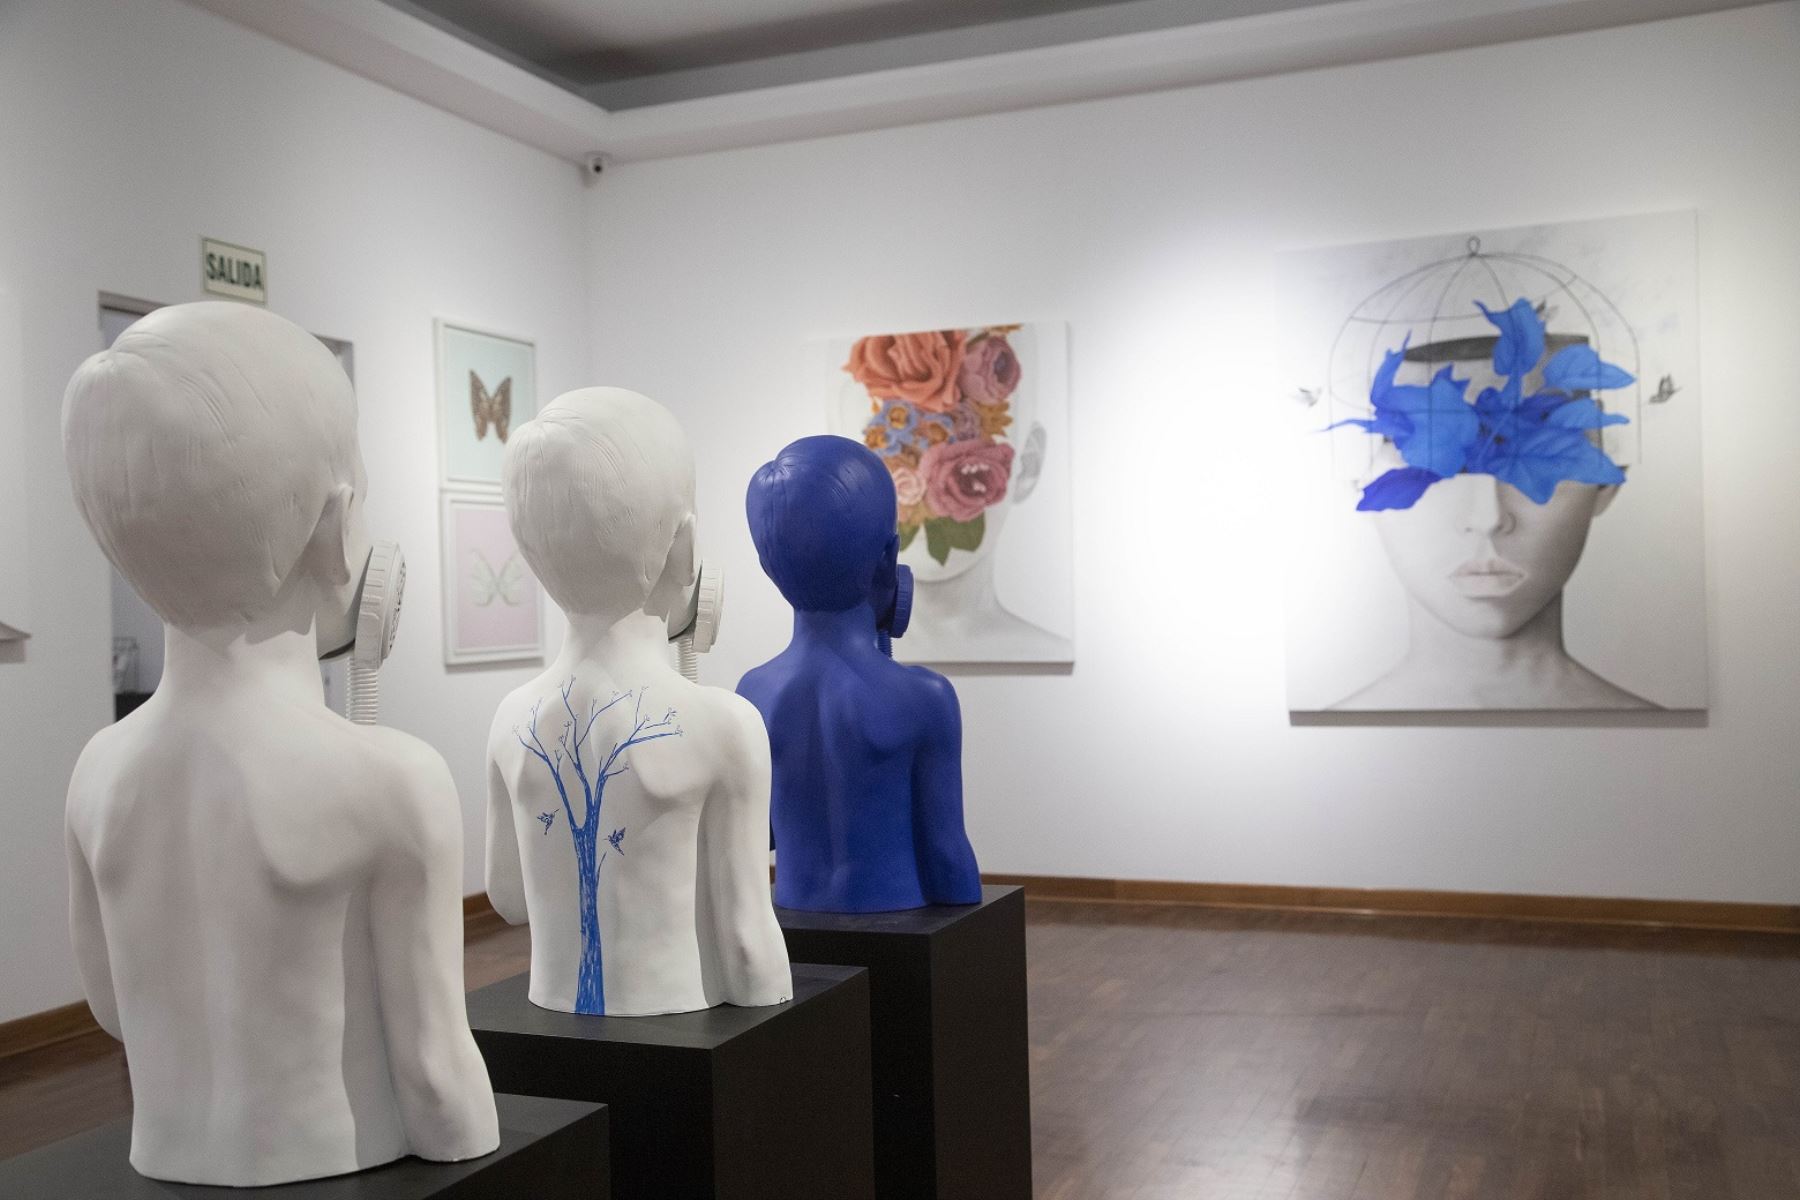 Presentan exposición “Fragmentos y cavilaciones del ser” del artista Paolo Vigo .